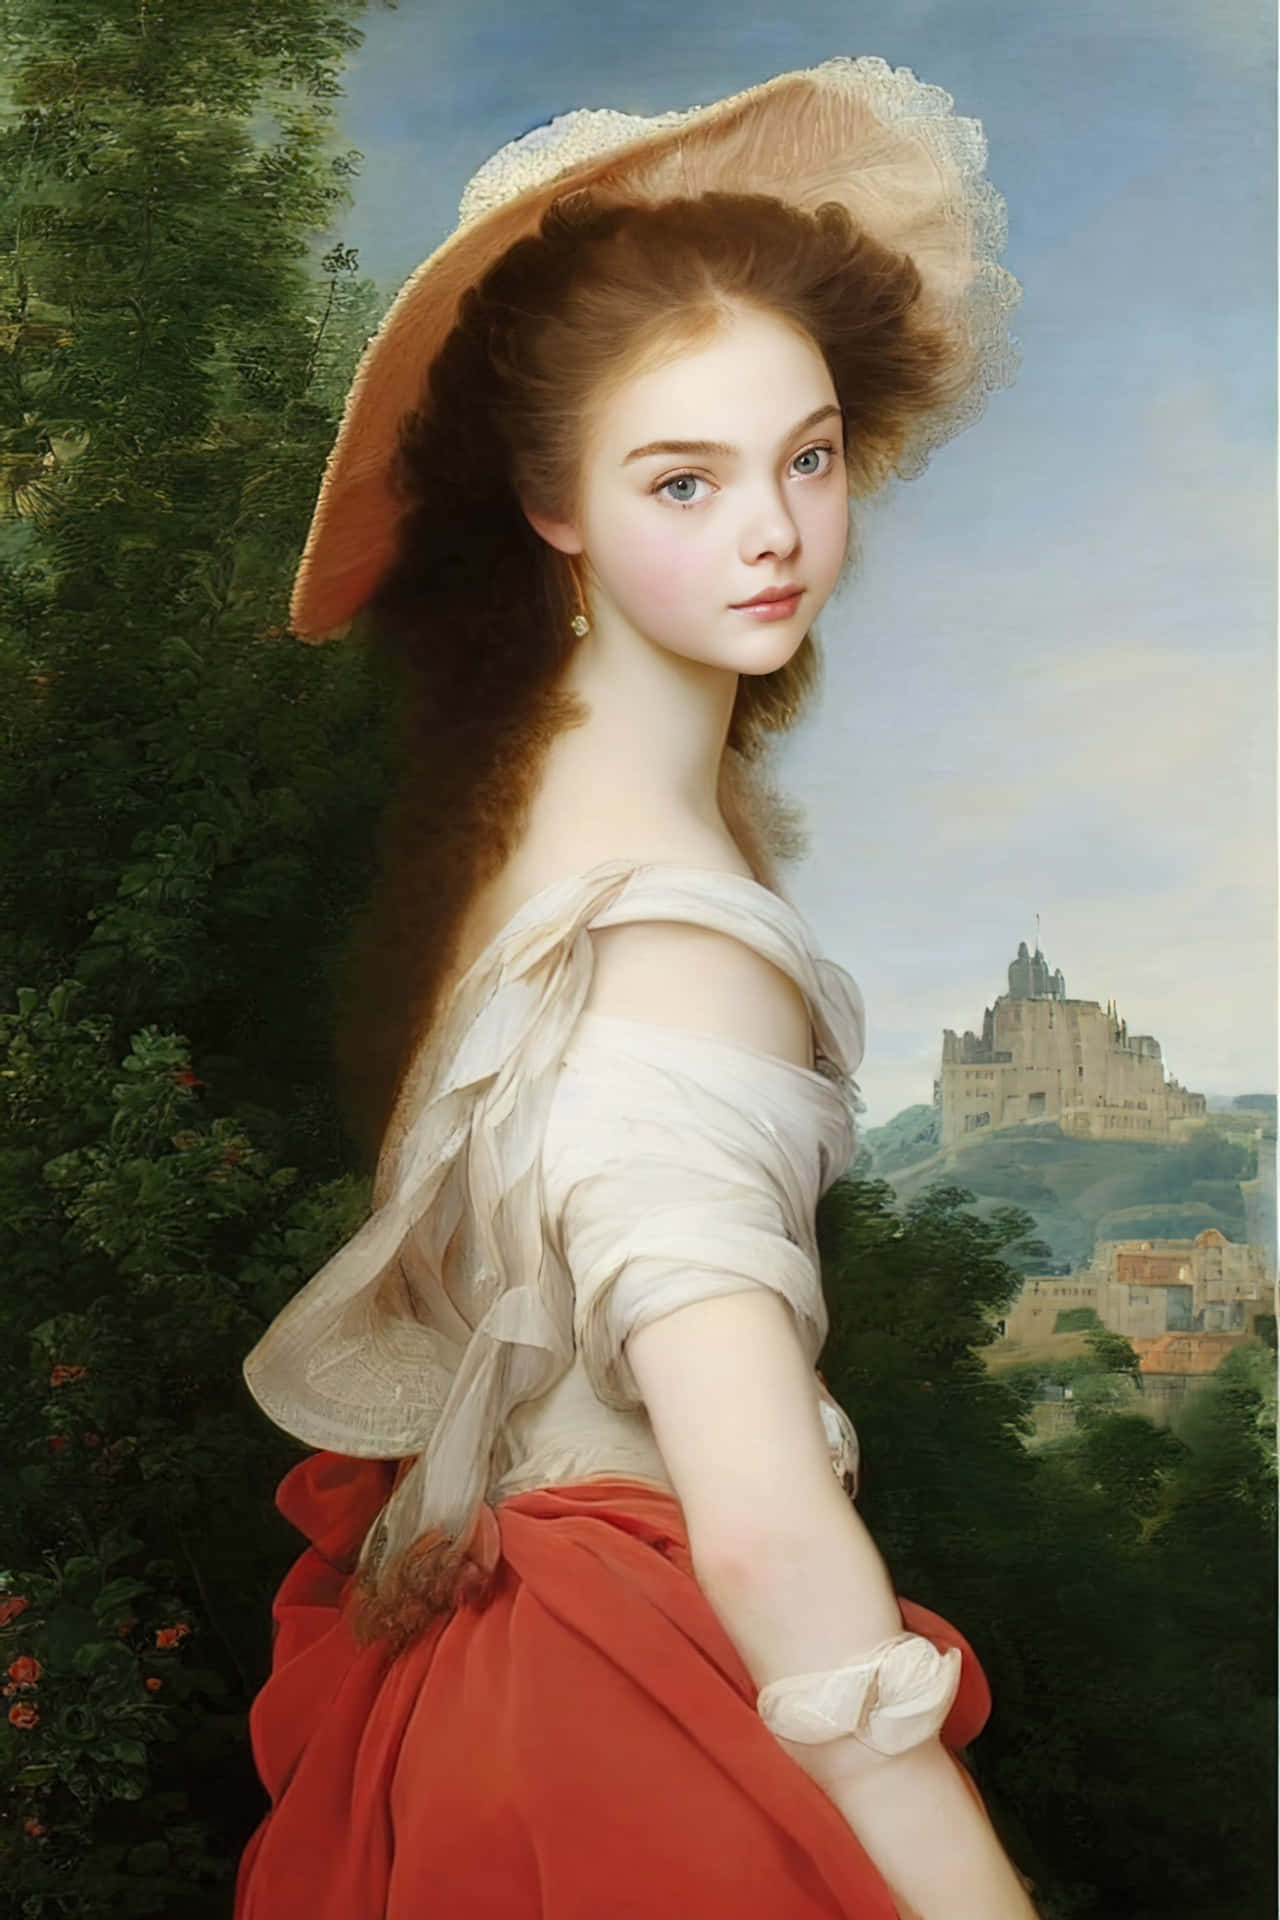 Enmålning Av En Kvinna I En Röd Klänning